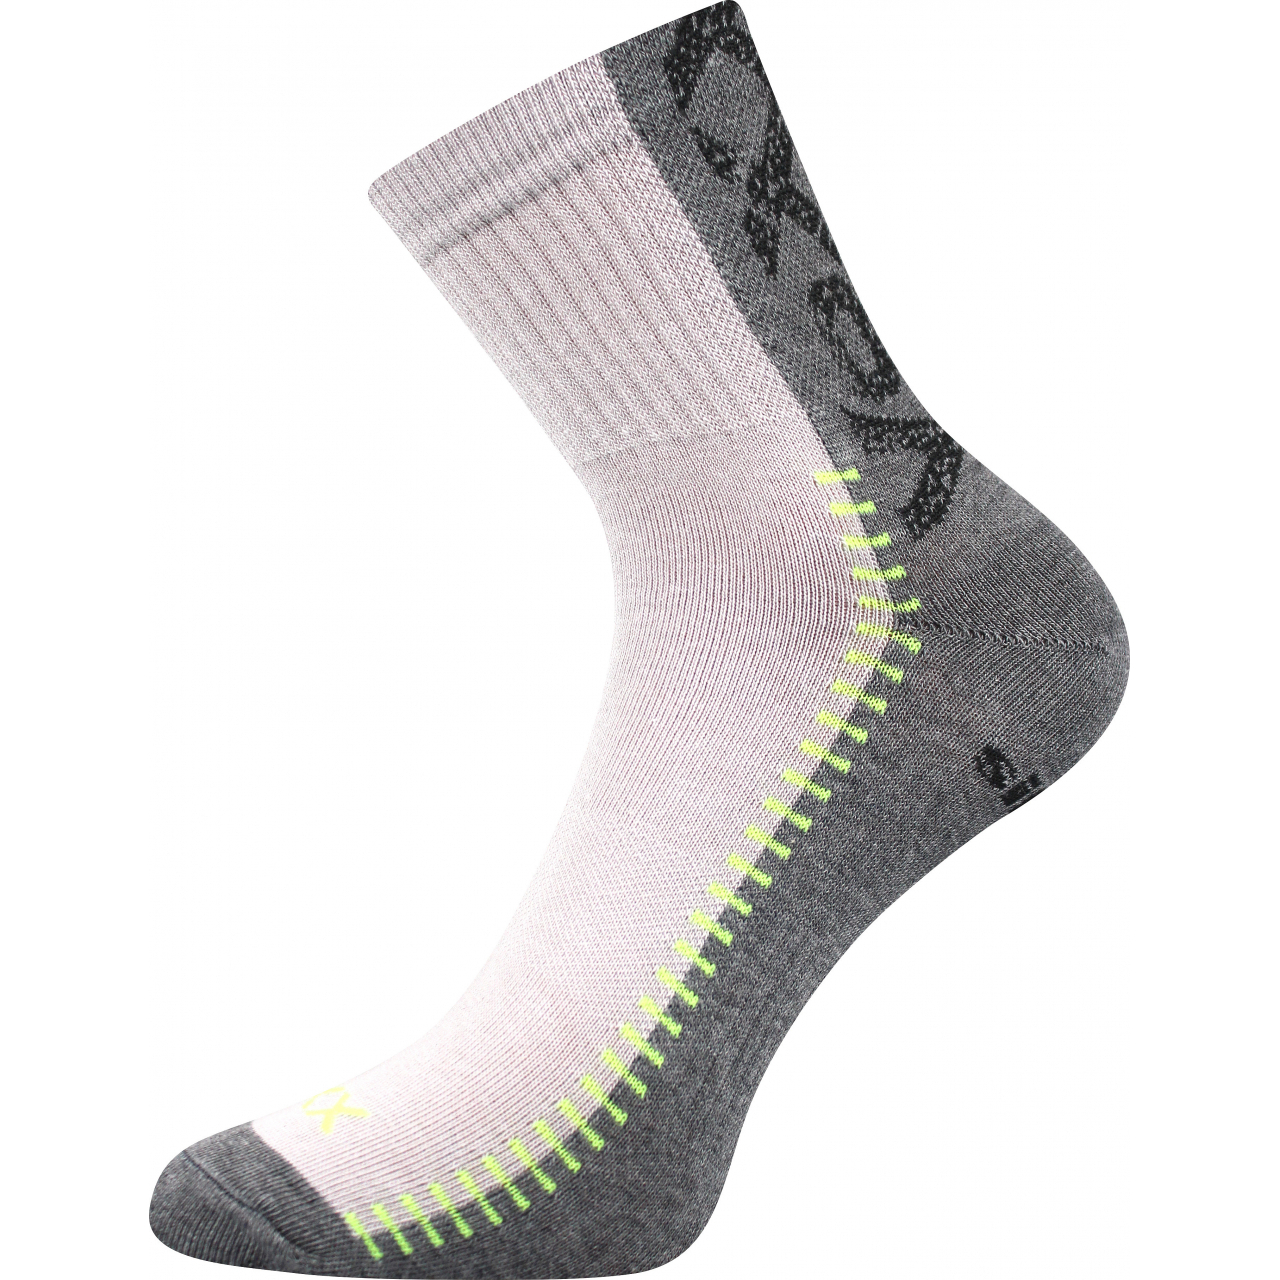 Ponožky sportovní Voxx Revolt - světle šedé-šedé, 35-38